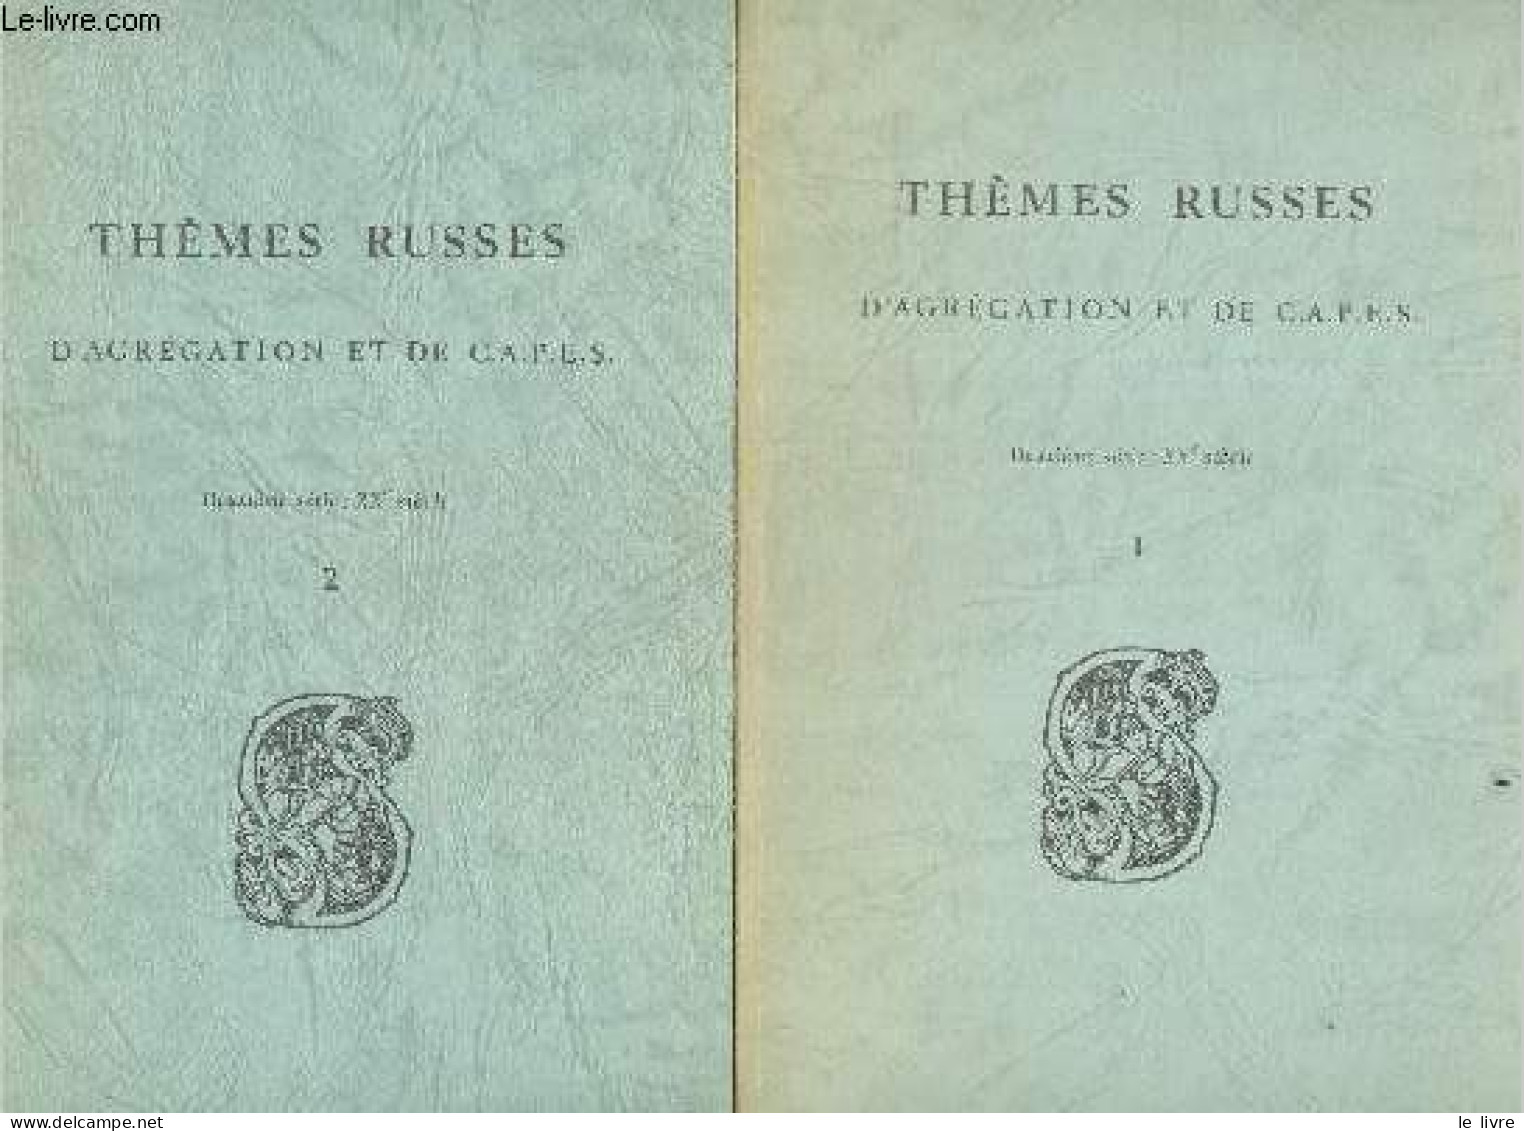 Themes Russes D'agregation Et De C.A.P.E.S. - Lot De 2 Volumes : Fascicule 1 Textes Et Traductions + Fascicule 2 Explica - Culture